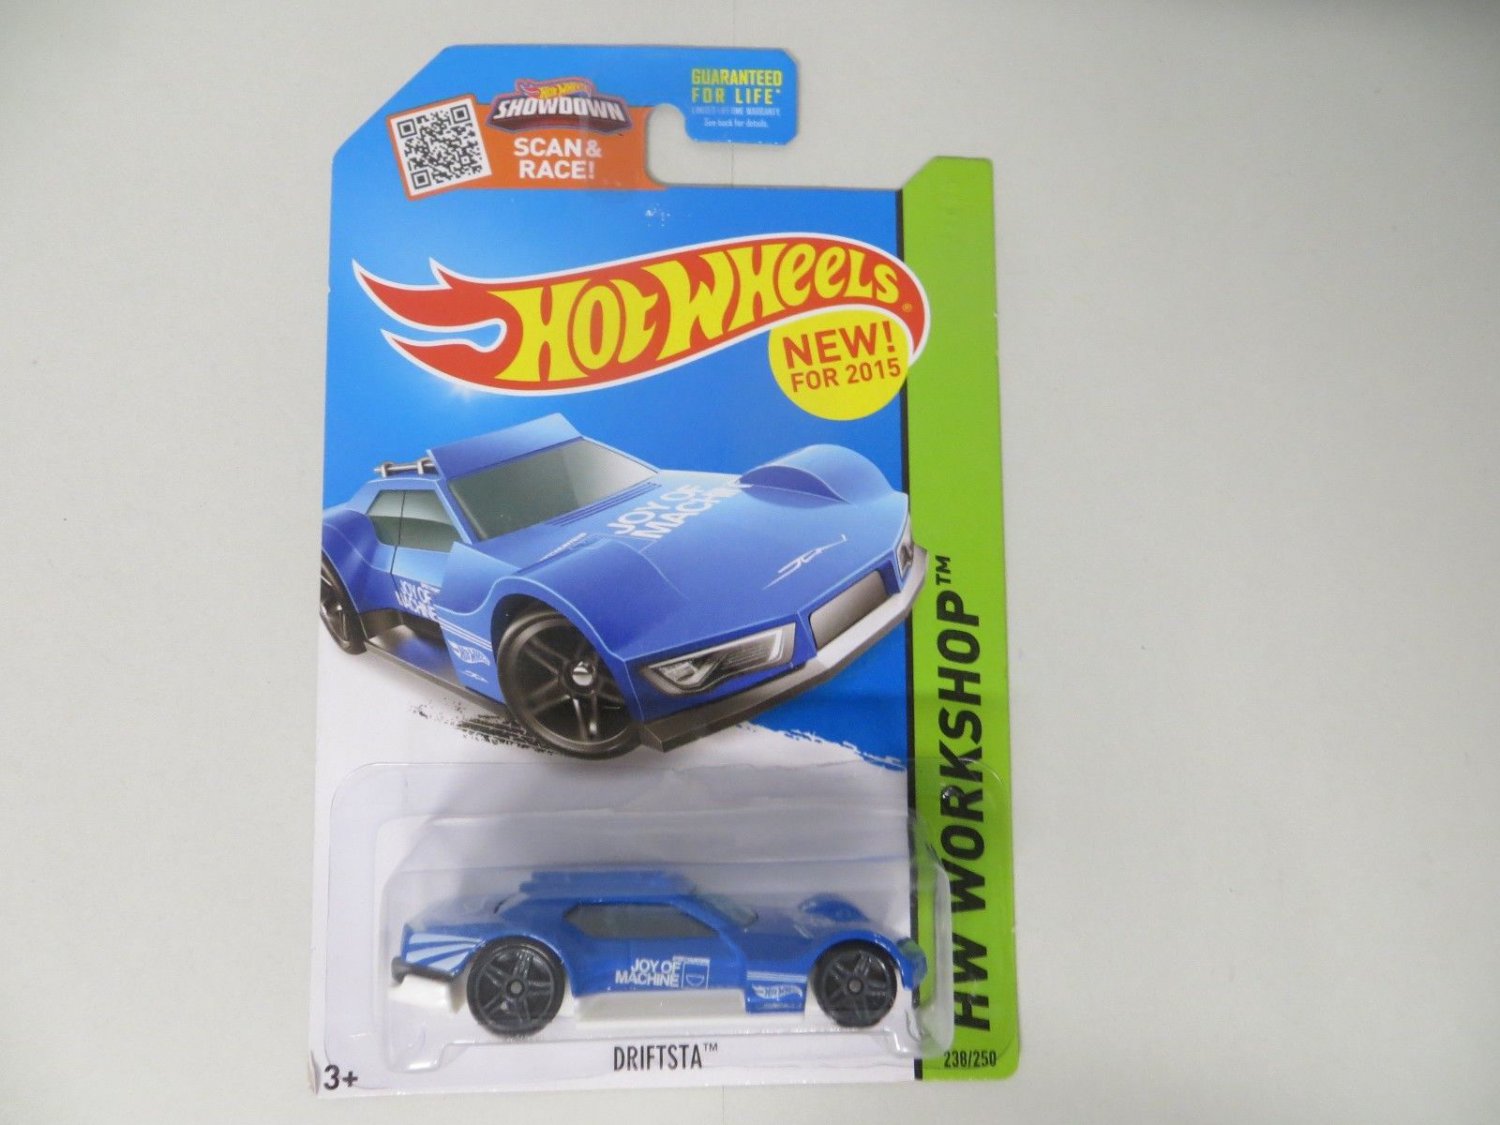 Driftsta Blue - Hot Wheels 2015 - Brand New.